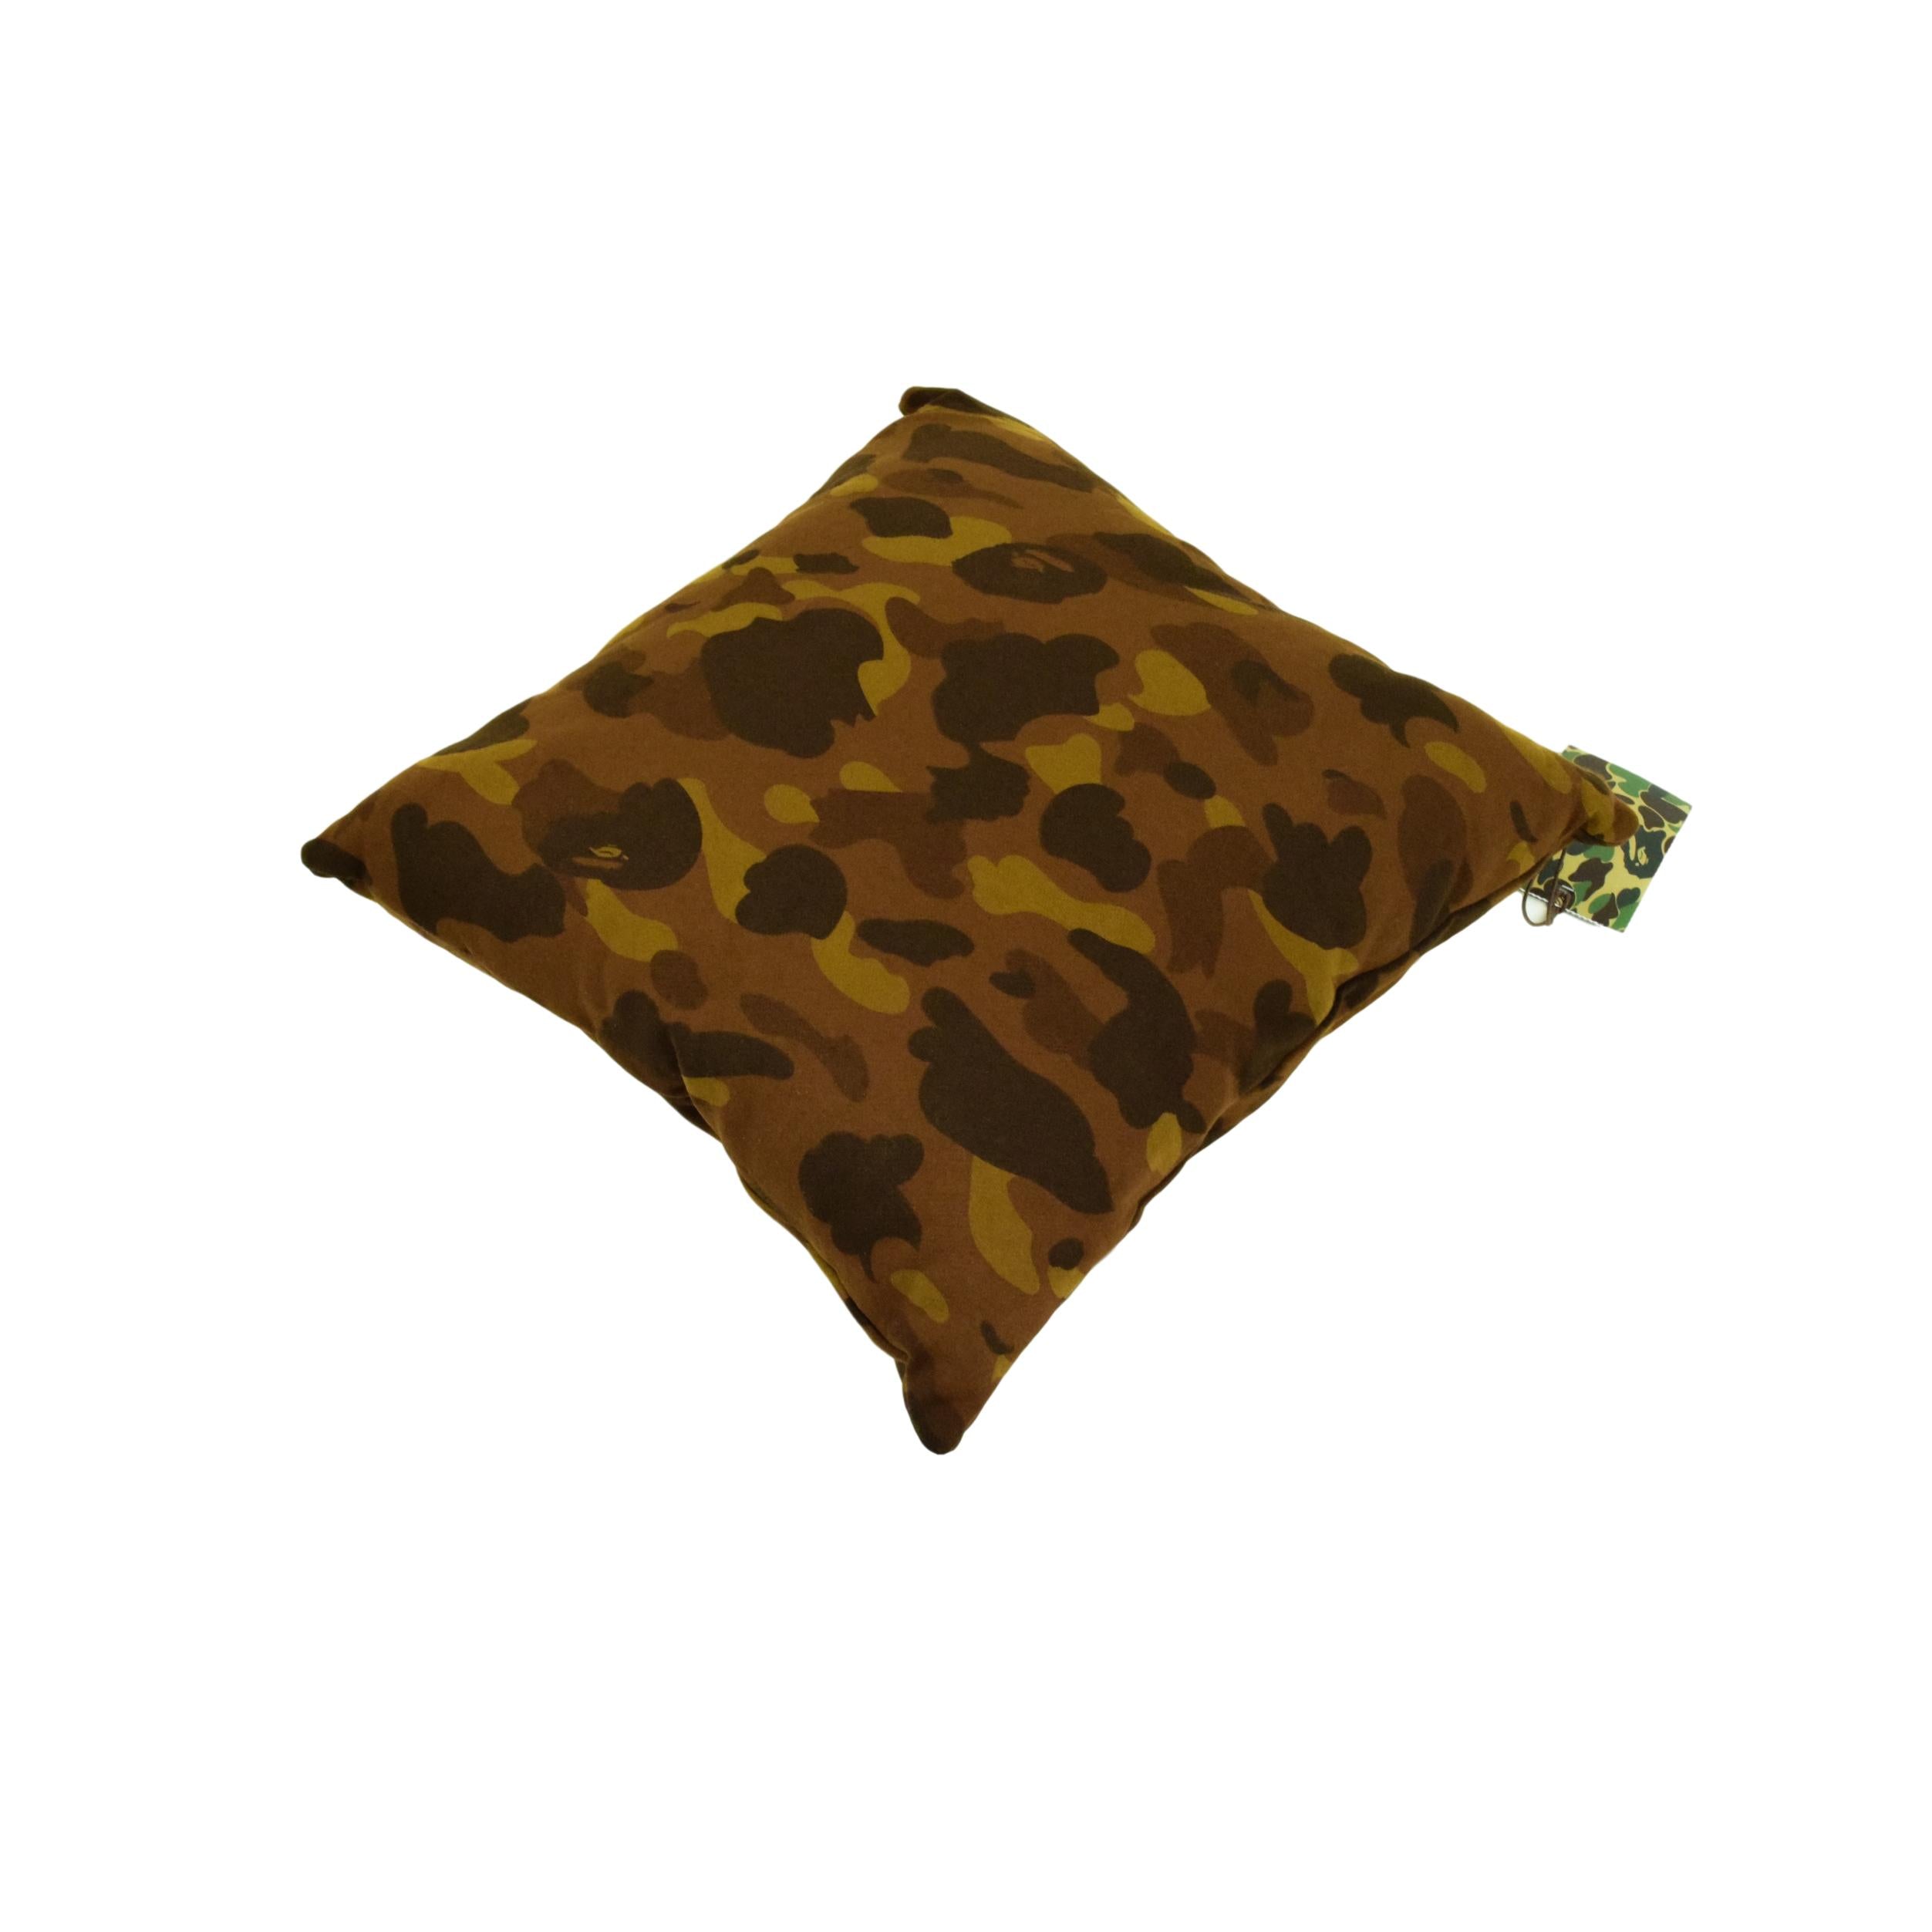 Bape Cushion Cover, Luxury Modern Cushions